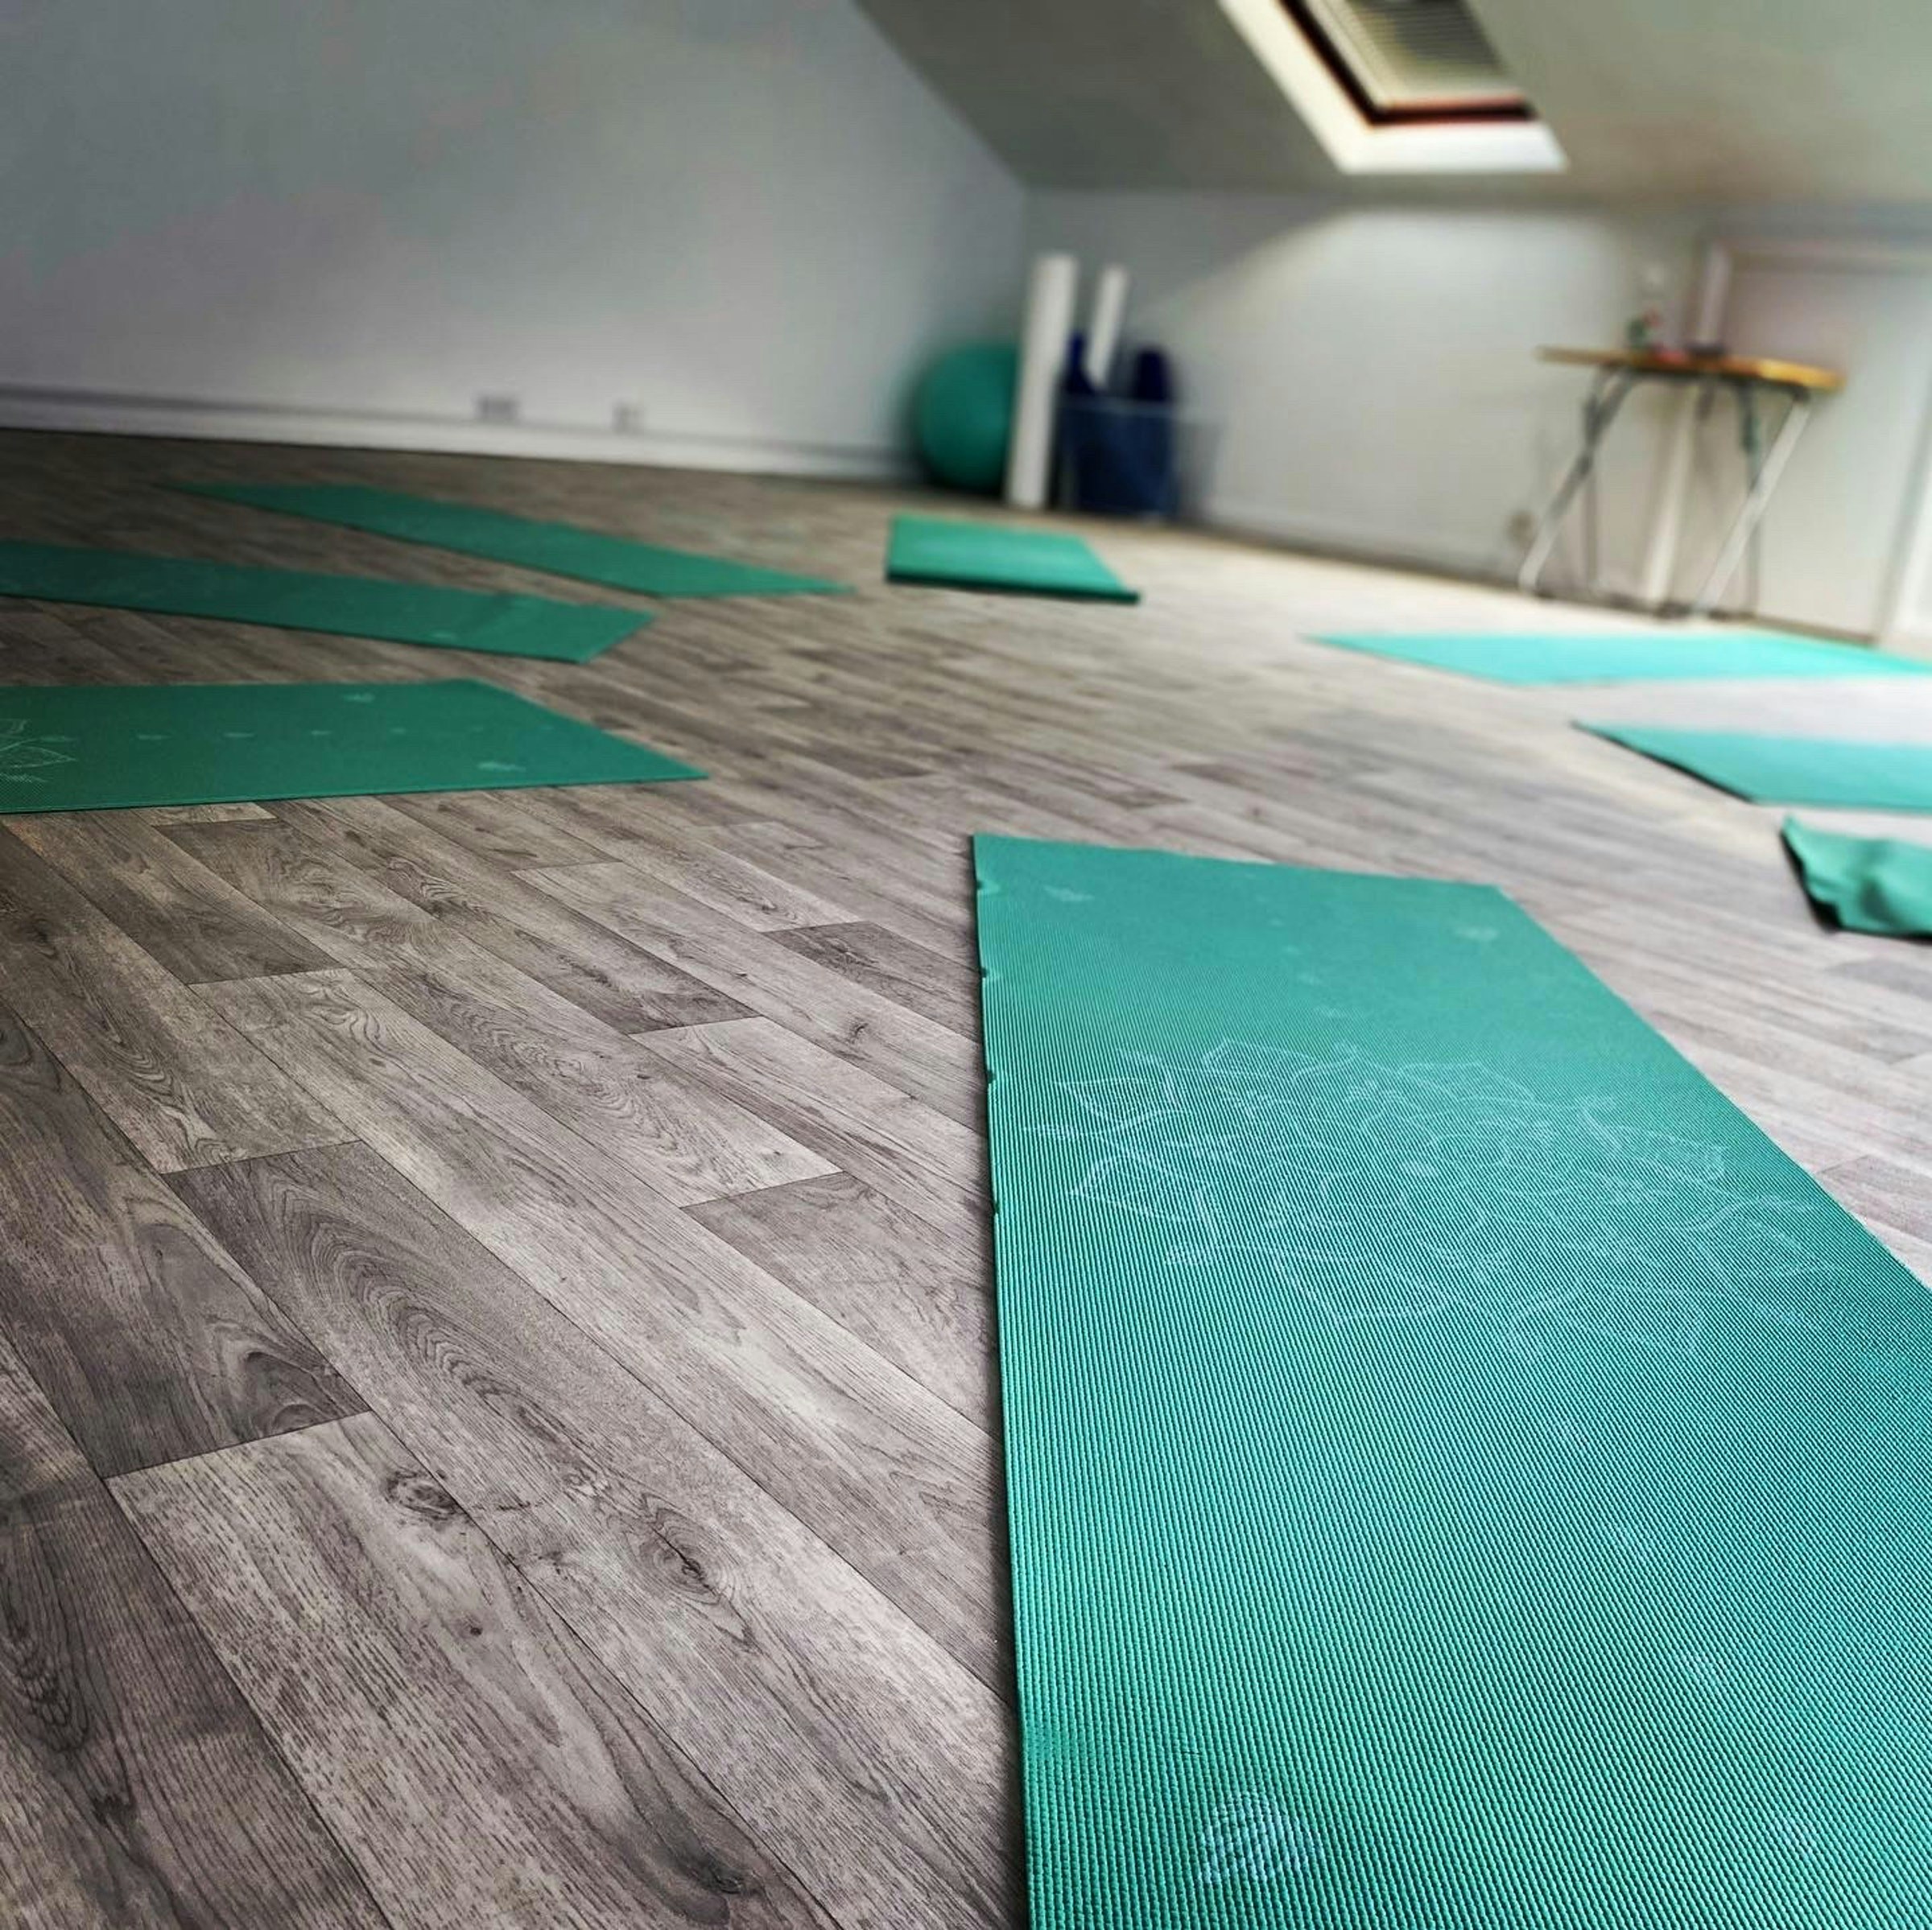 Loft yoga studio to rent